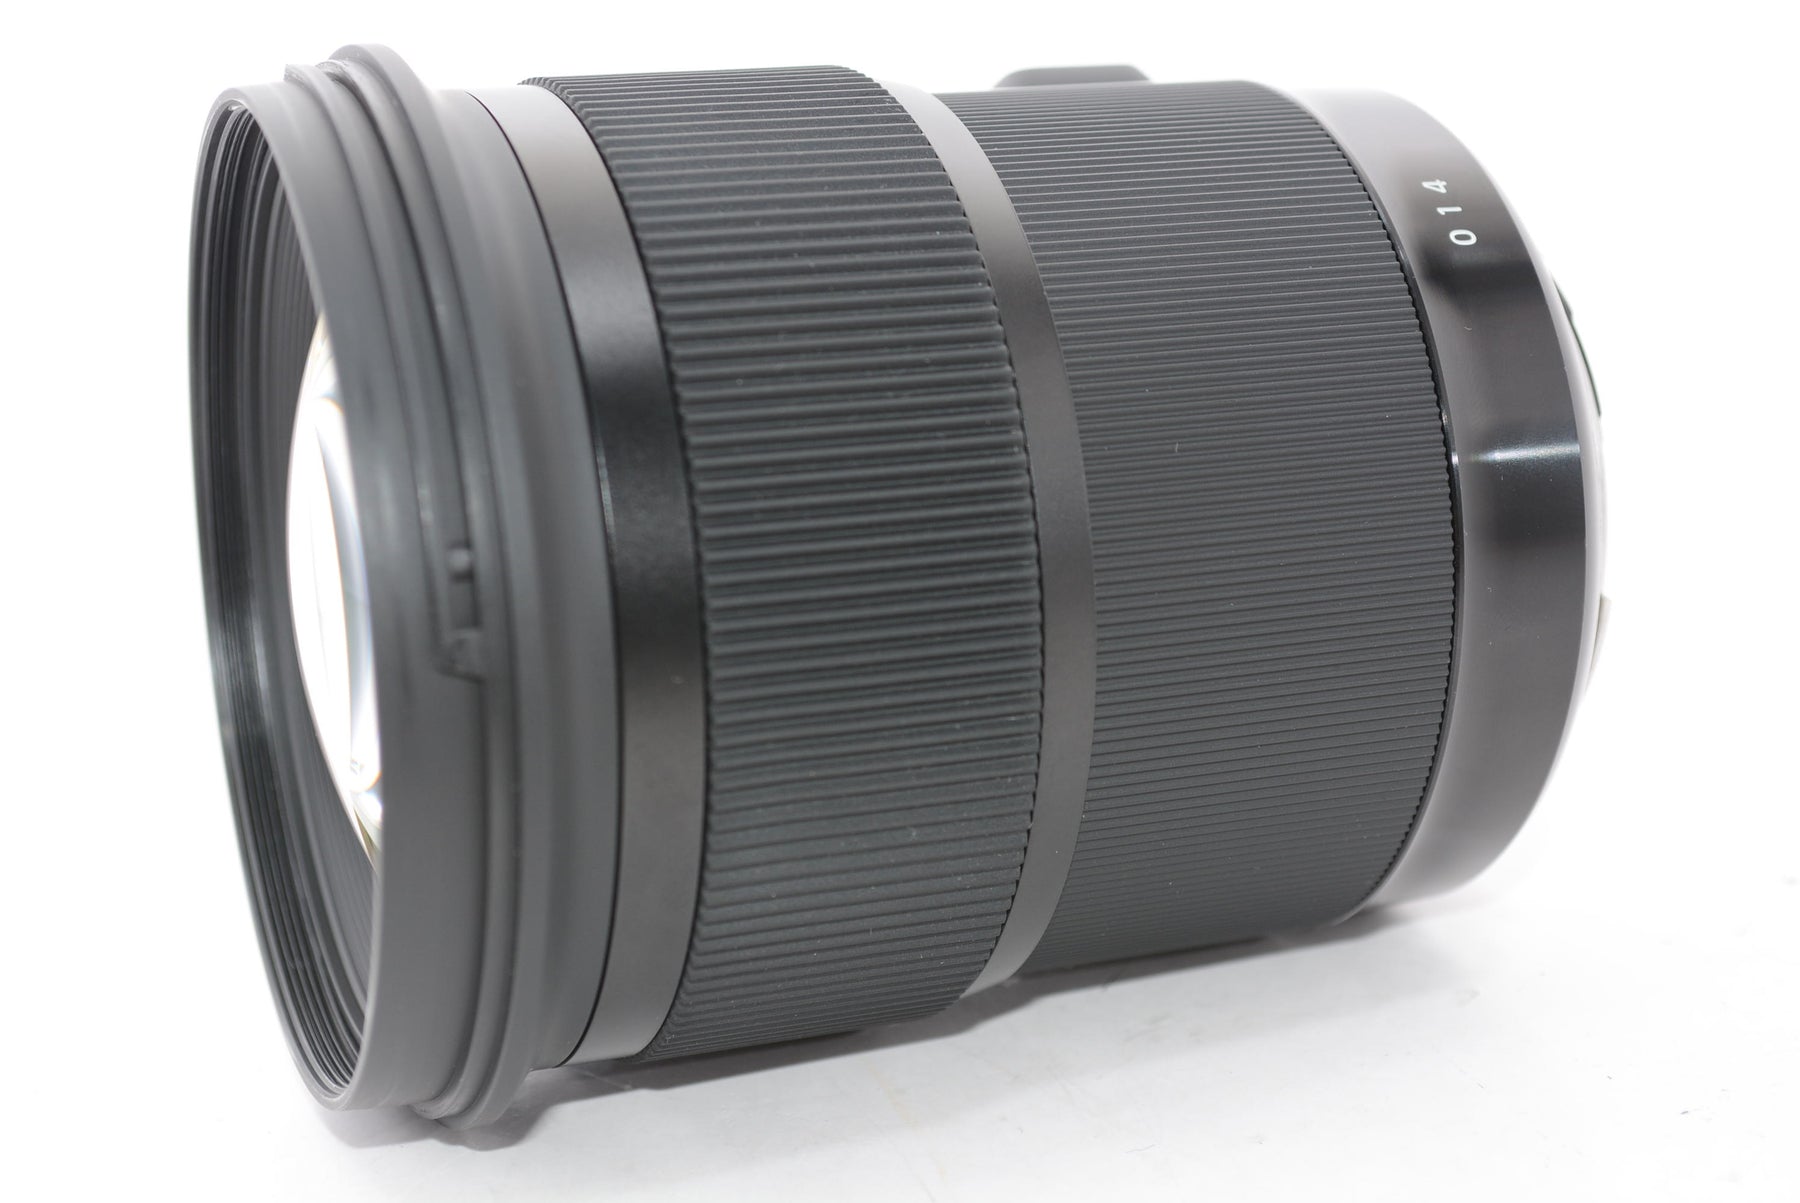 【外観特上級】SIGMA 単焦点標準レンズ Art 50mm F1.4 DG HSM キヤノン用 フルサイズ対応 311544